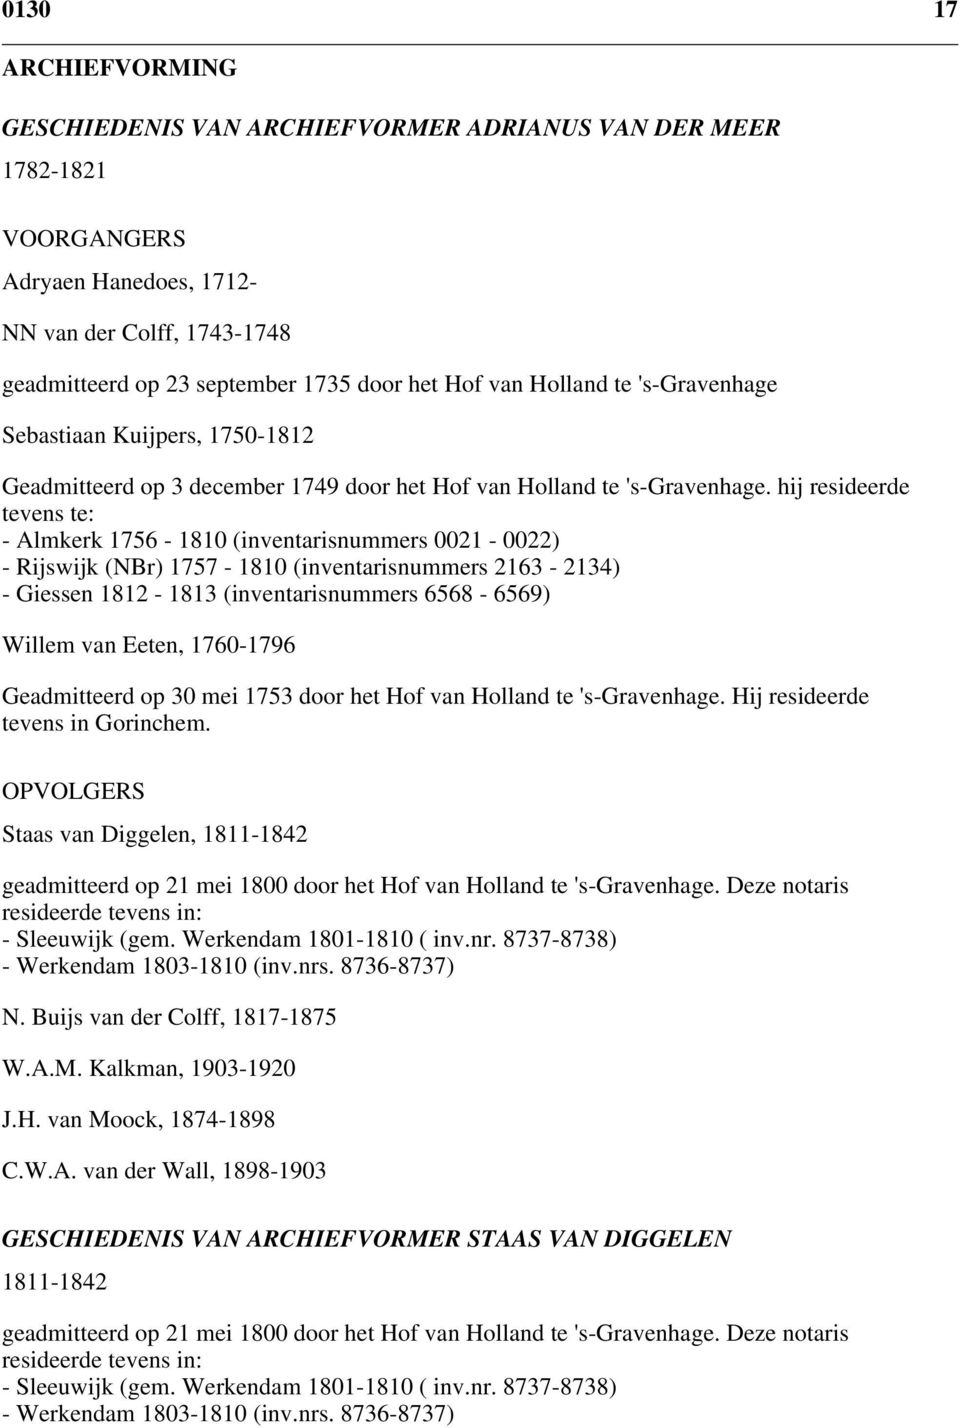 hij resideerde tevens te: - Almkerk 1756-1810 (inventarisnummers 0021-0022) - Rijswijk (NBr) 1757-1810 (inventarisnummers 2163-2134) - Giessen 1812-1813 (inventarisnummers 6568-6569) Willem van